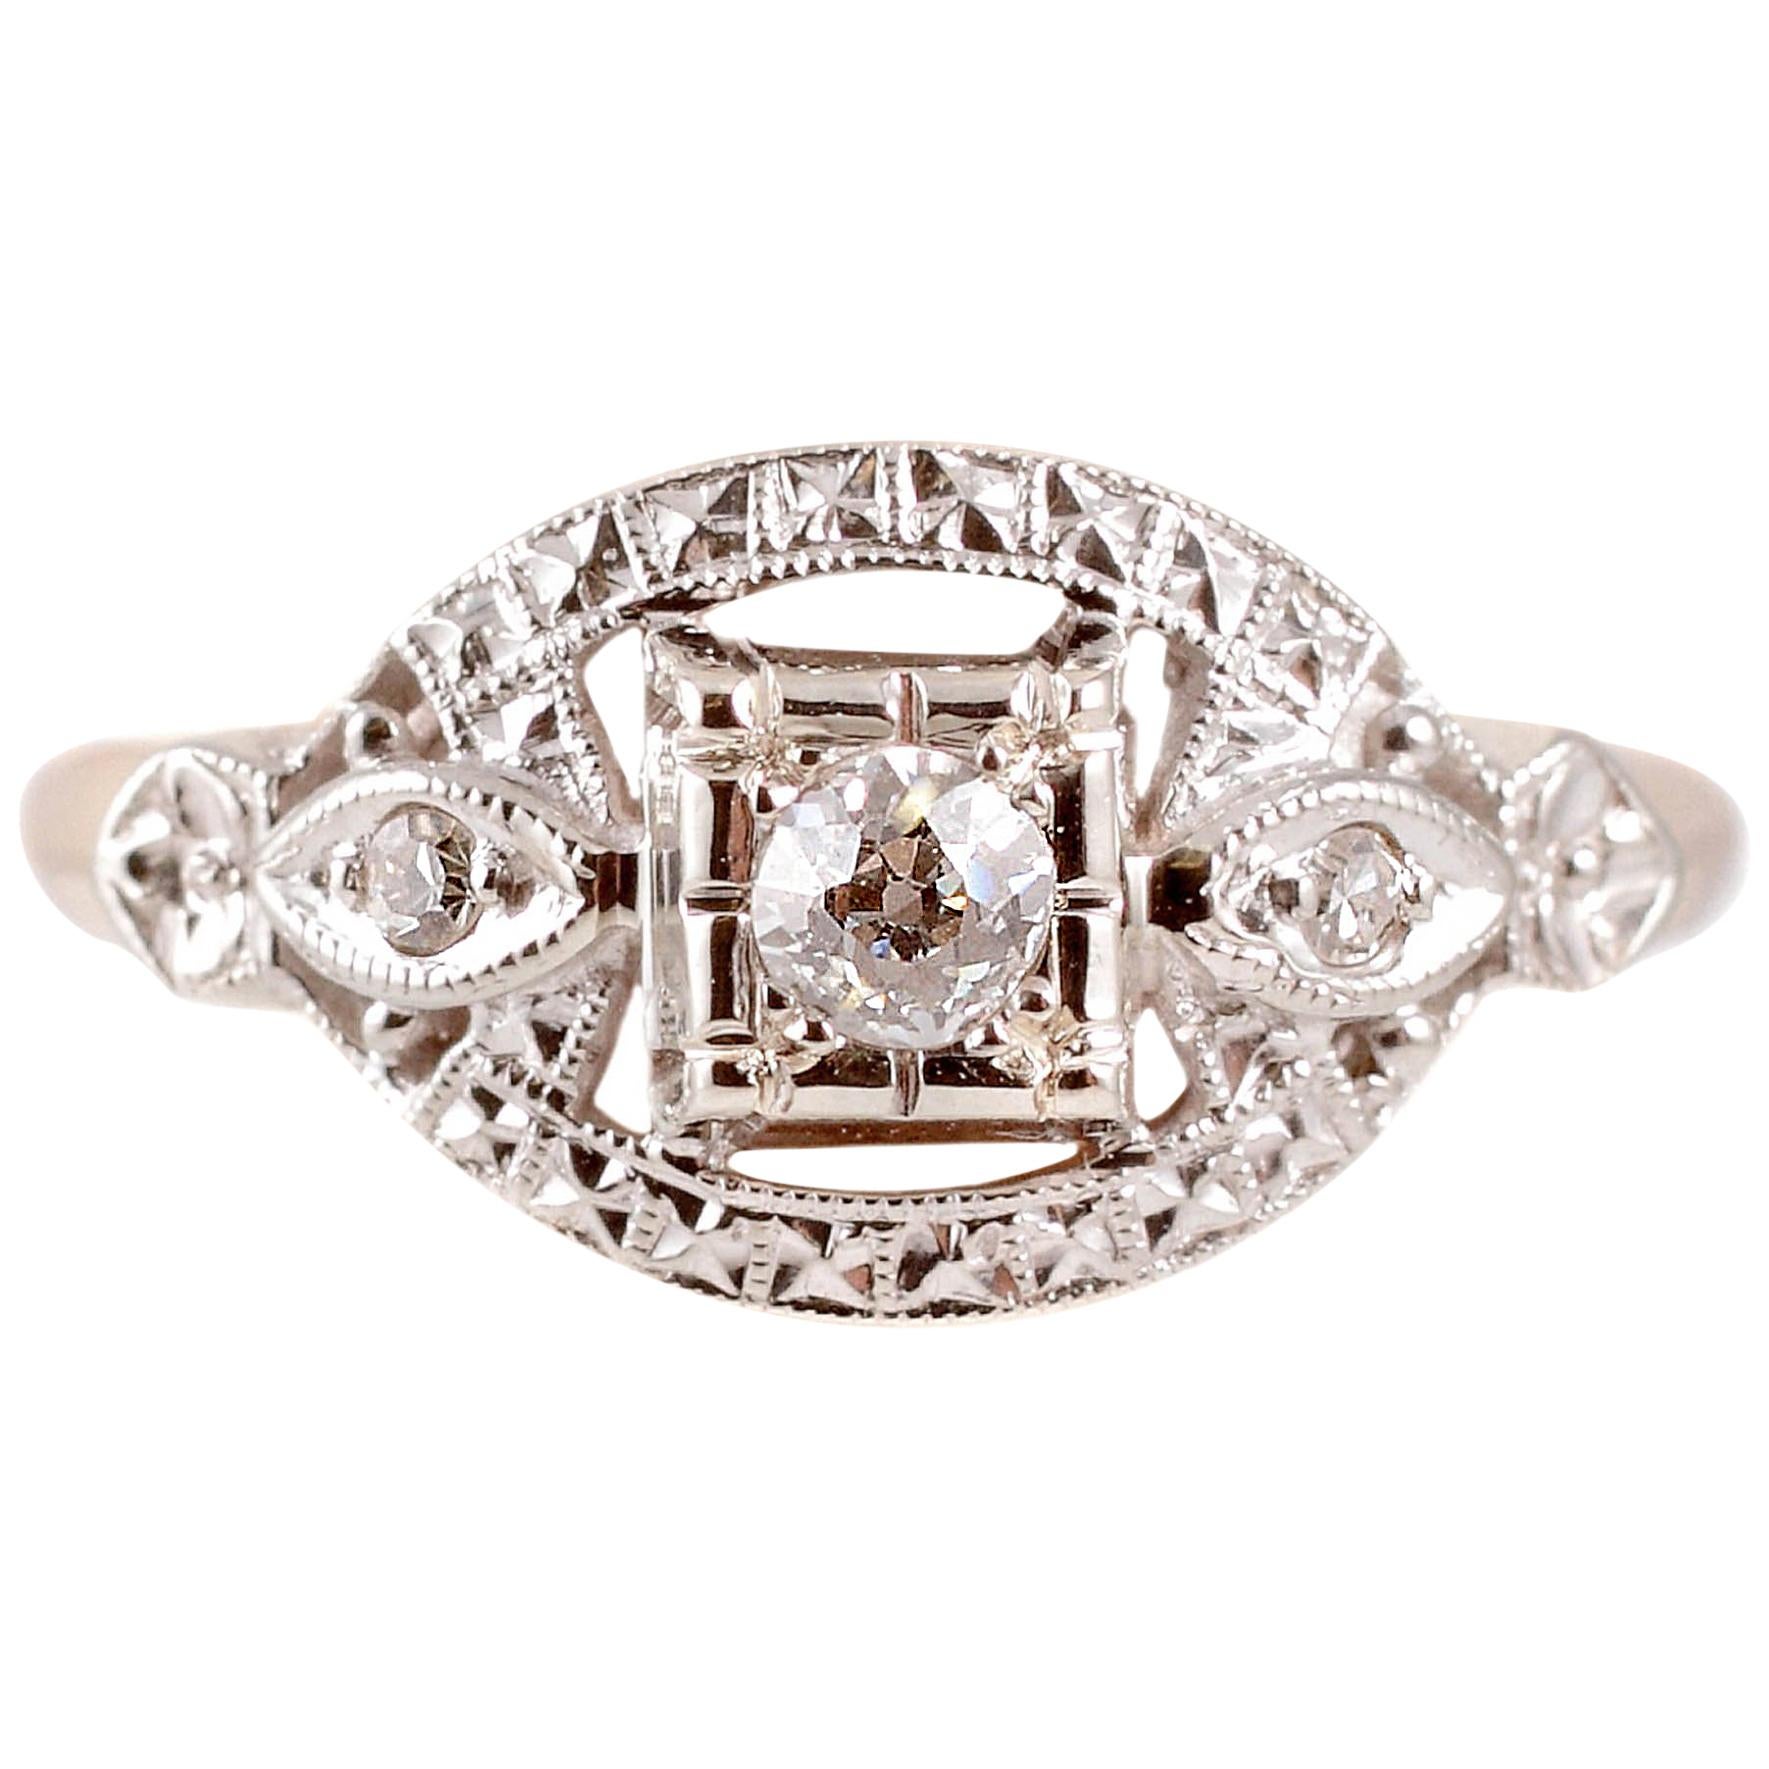 Two-Tone Diamond Ring